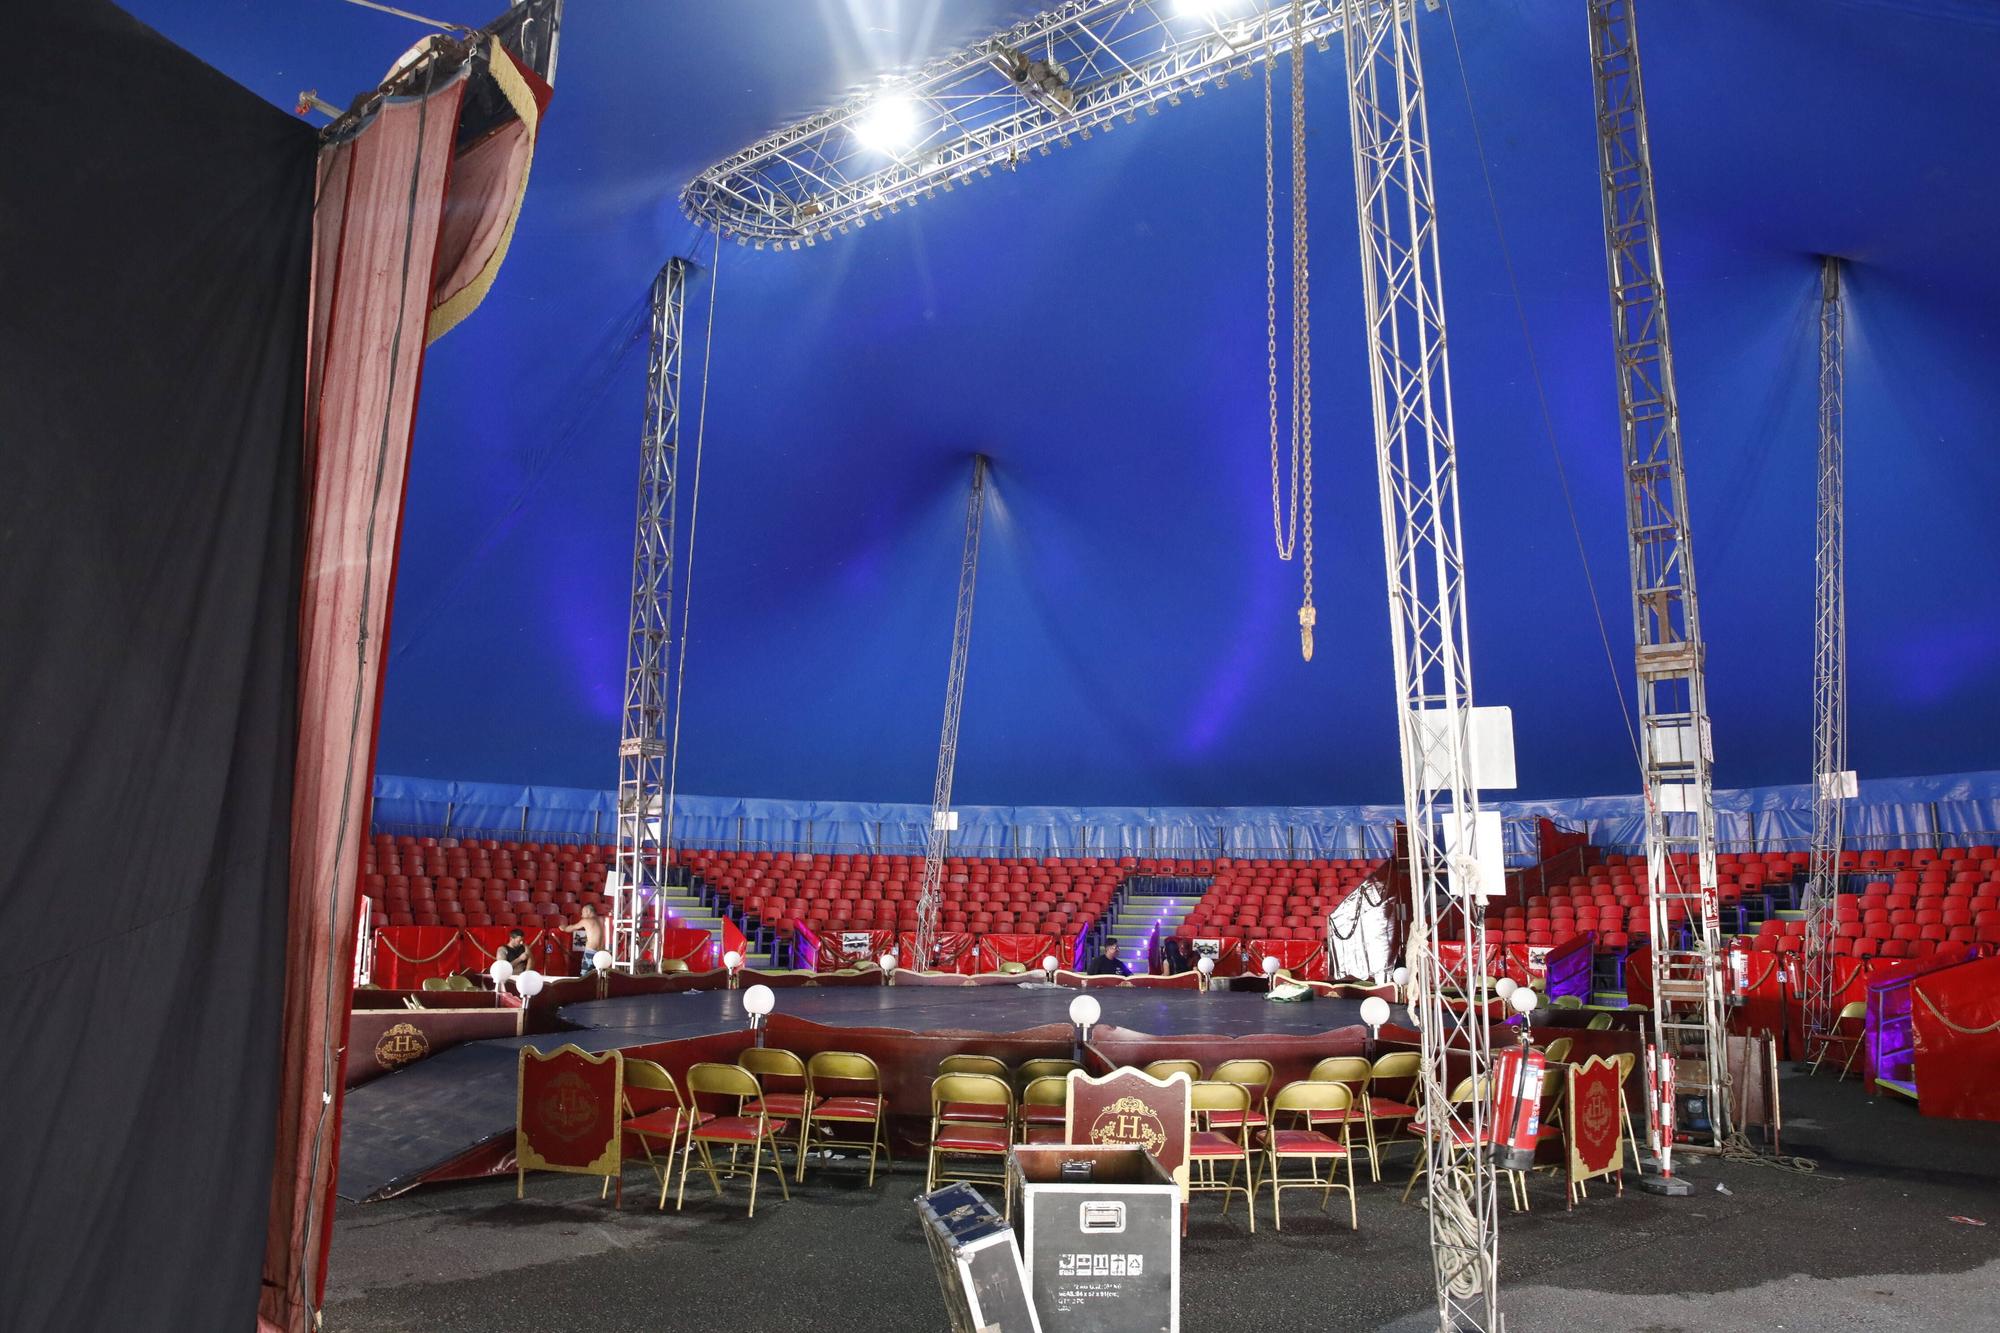 El Circo Holiday estrena espectáculo en Gijón (en imágenes)